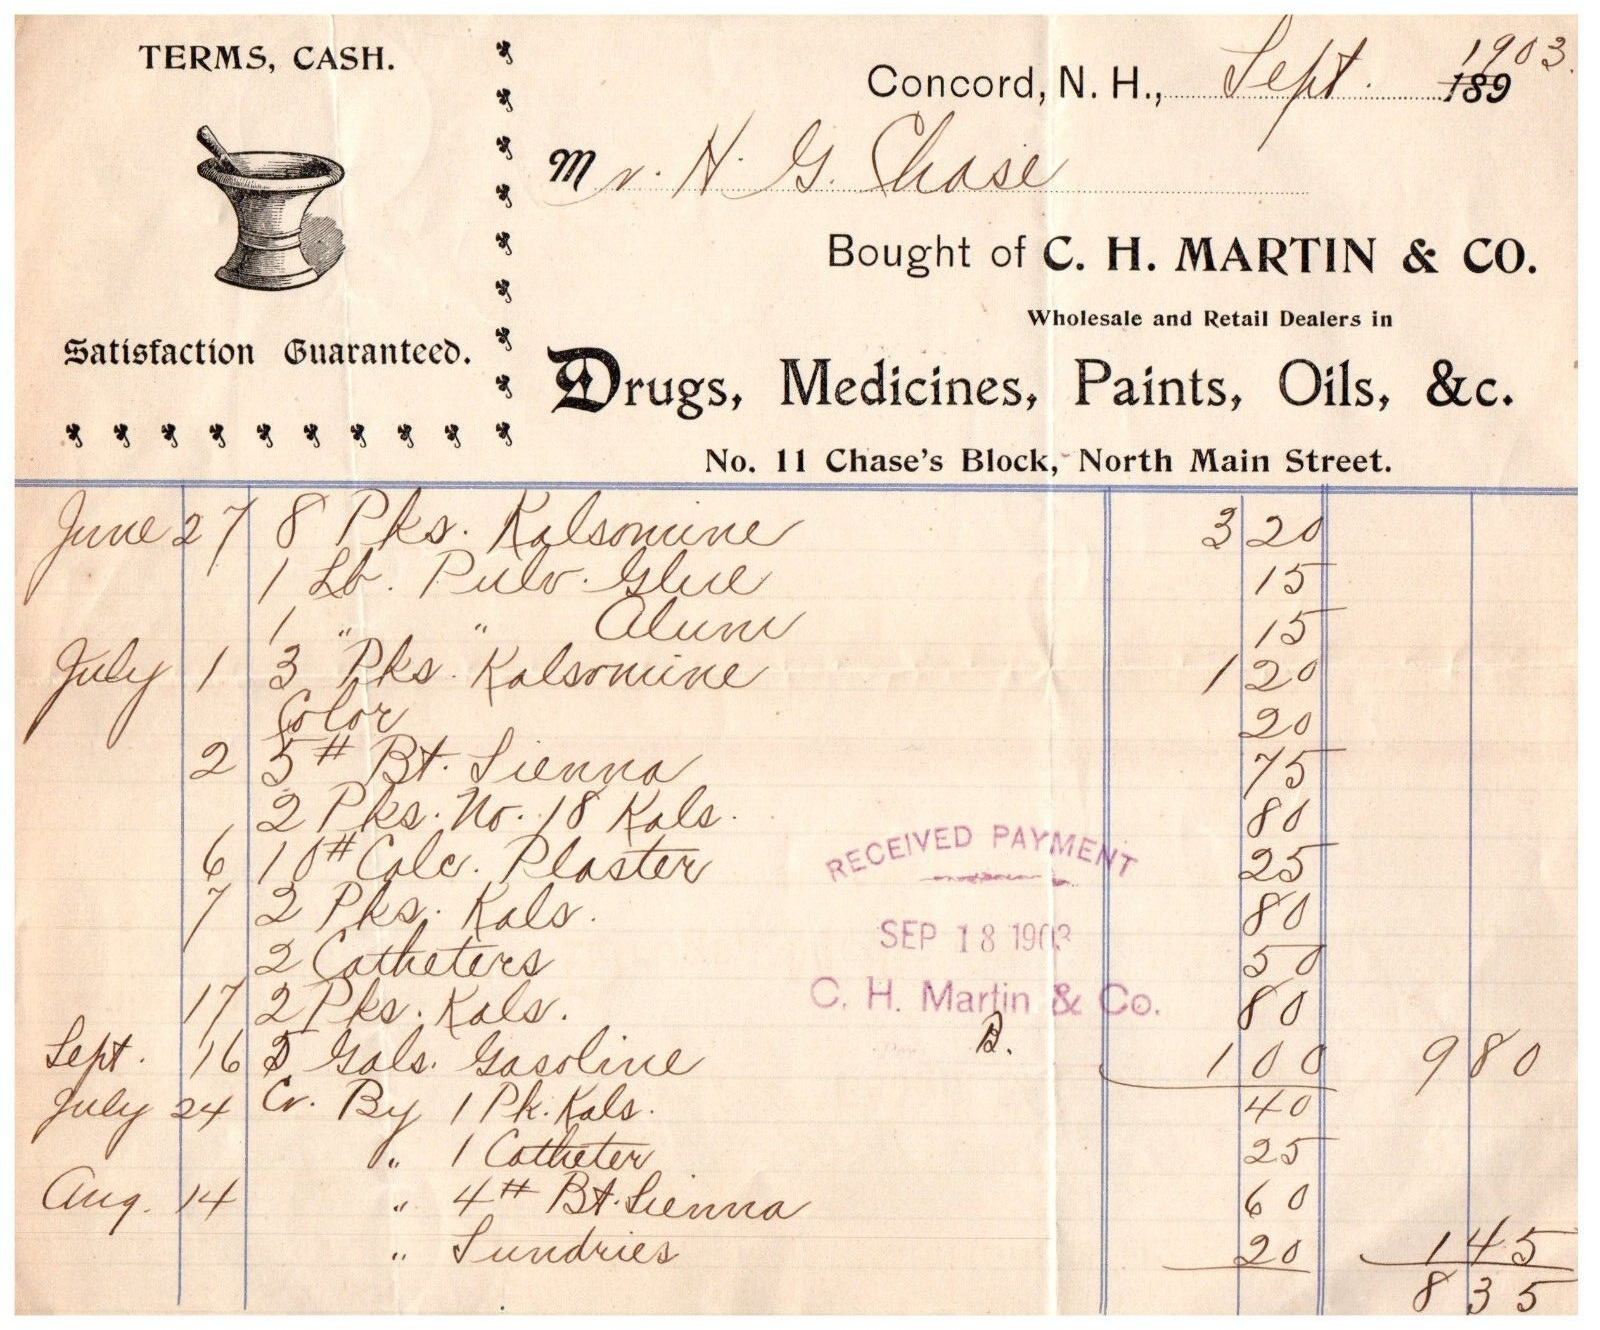 Concord NH C.H. Martin Drugs Medicines Paints Oils Letterhead Receipt 1903